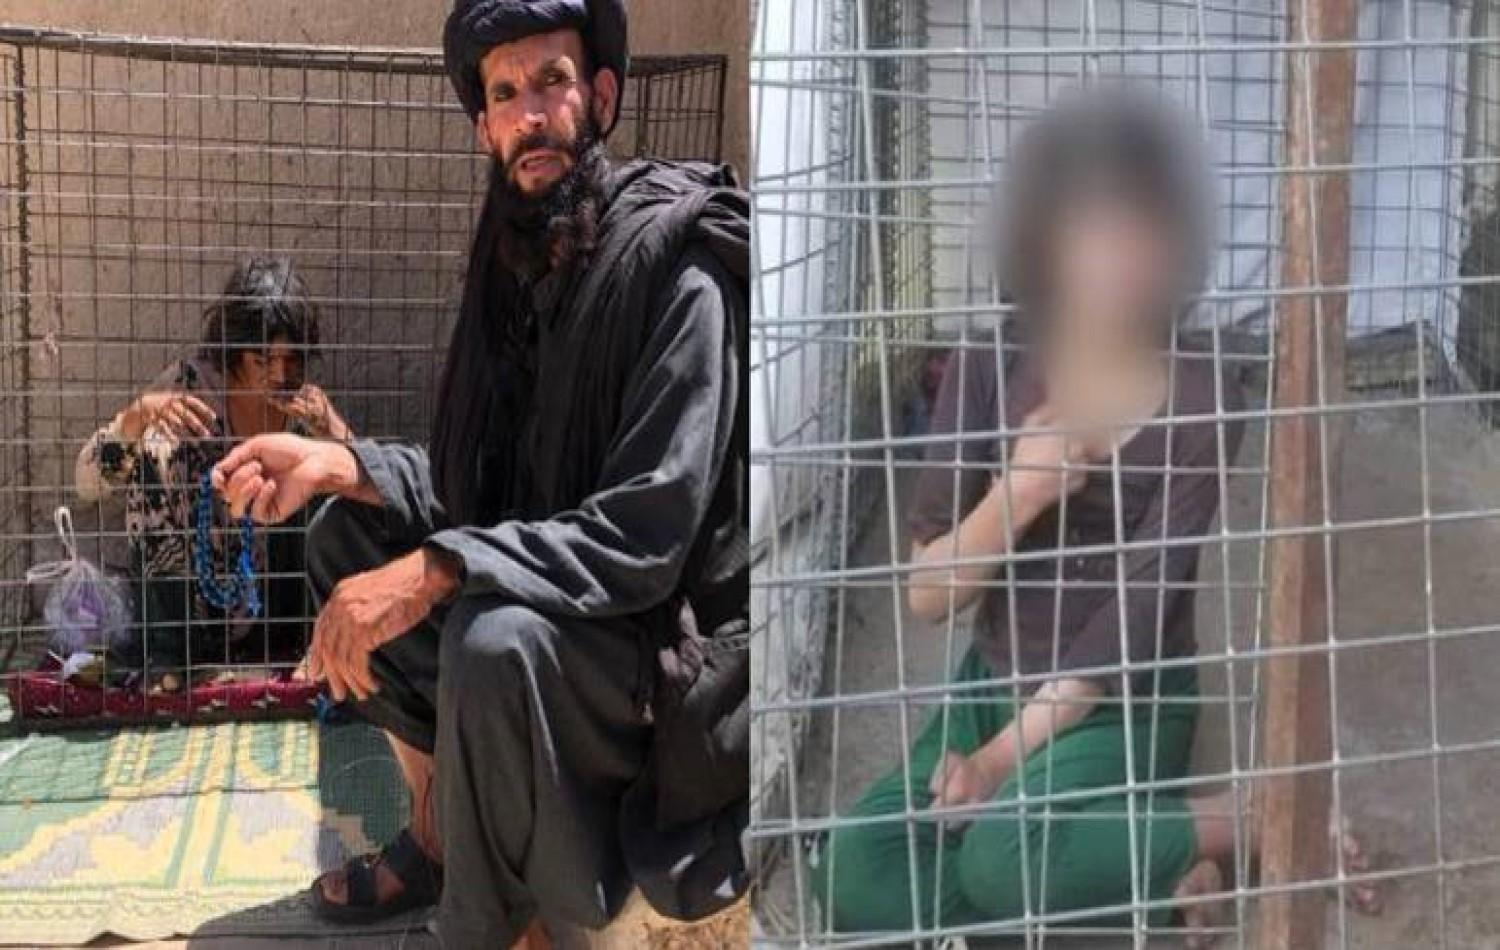 Duas adolescentes são mantidas em gaiolas no Afeganistão devido a doença neurológica